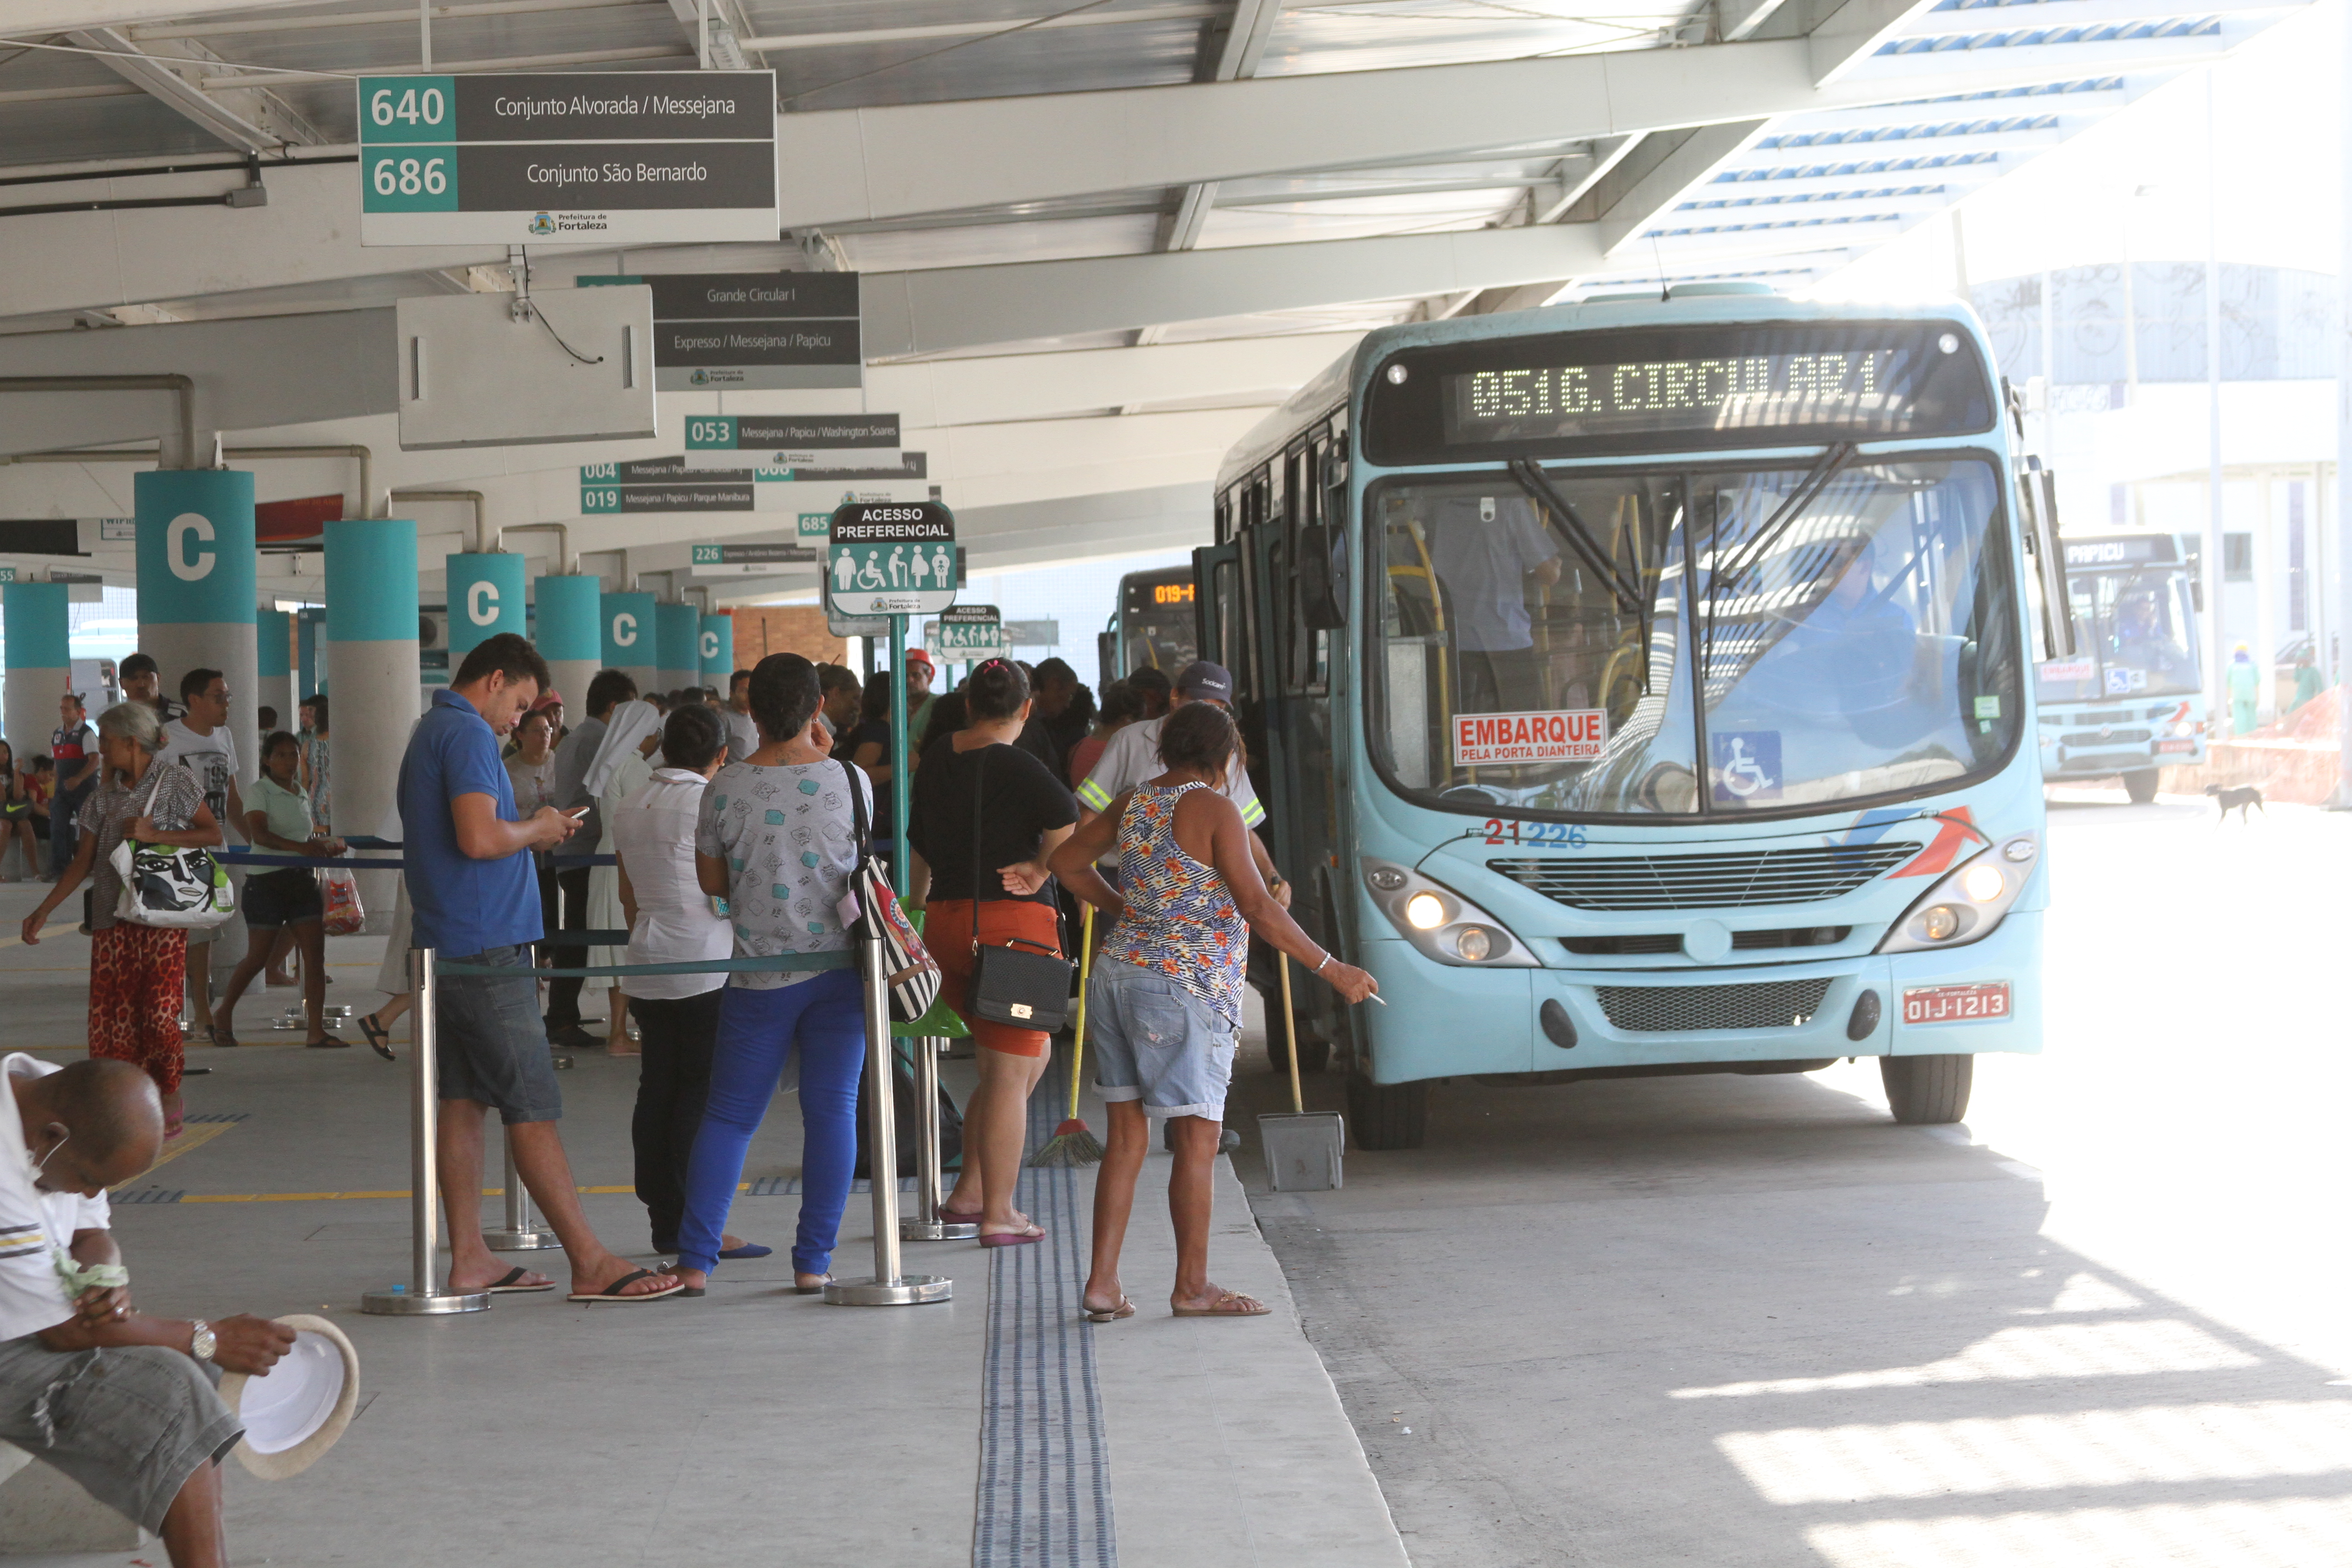 foto mostra plataforma de embarque e desembarque de ônibus no terminal de messejana, com pessoas subindo em um ônibus